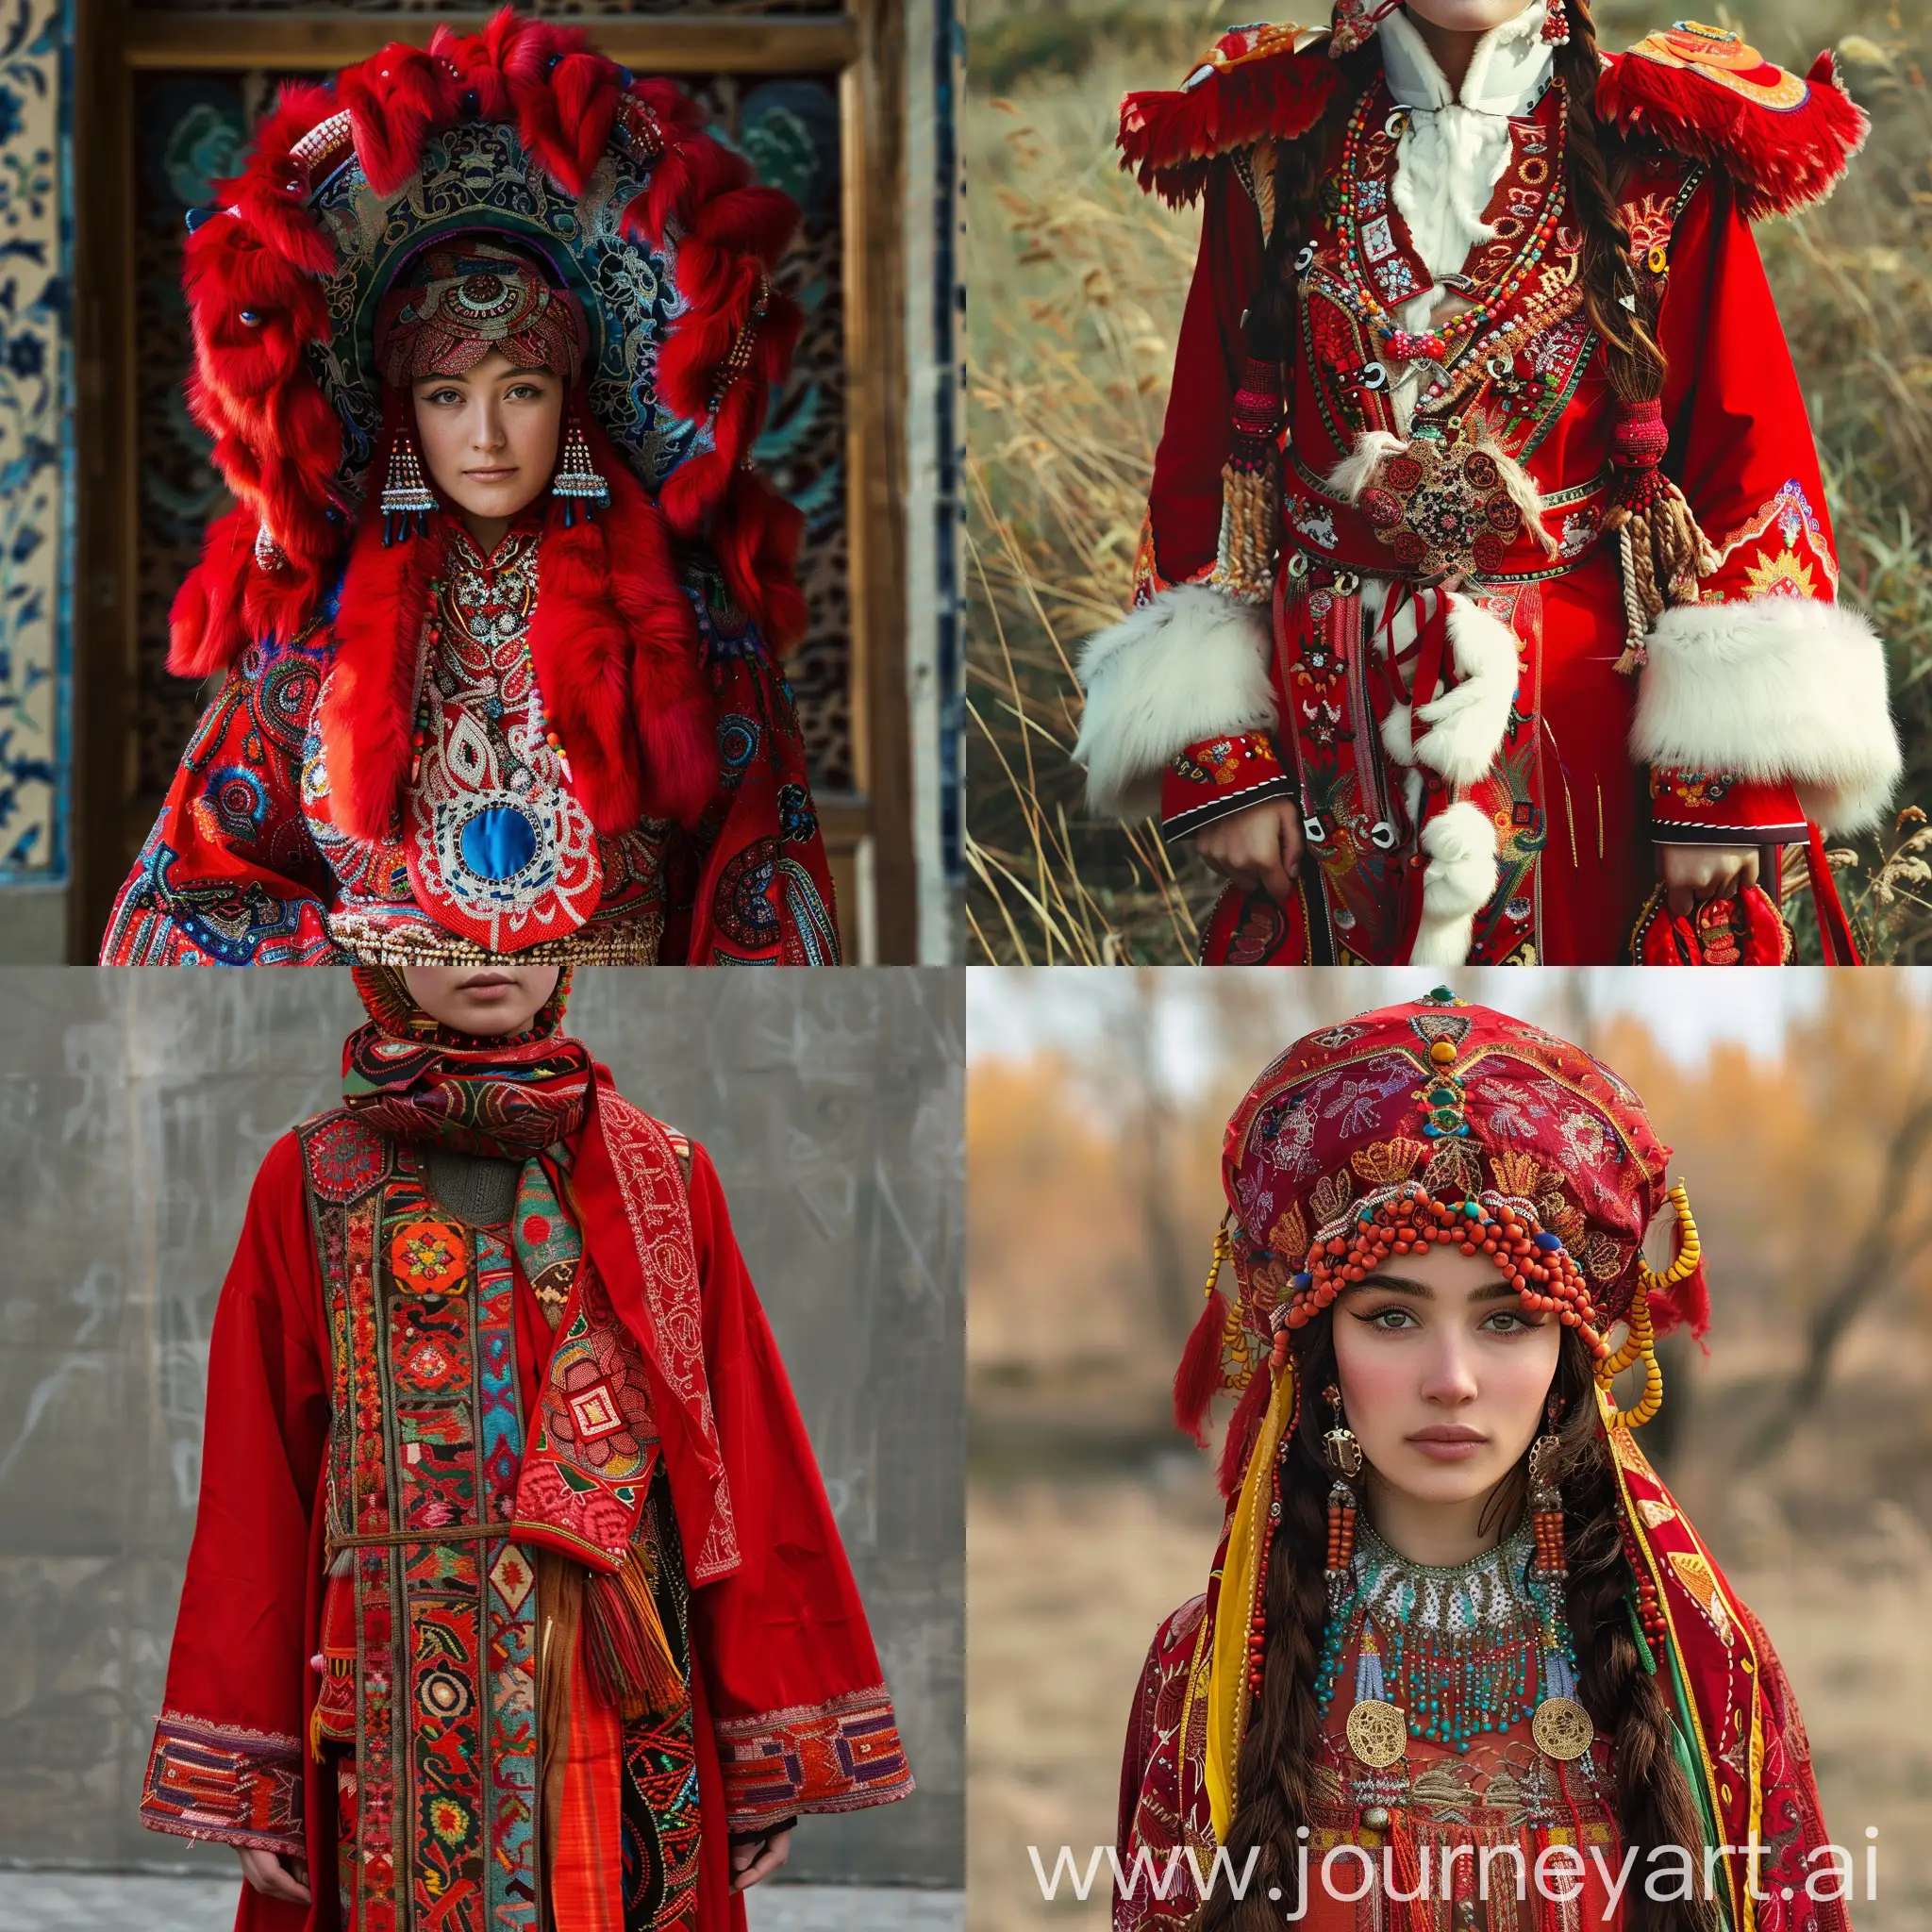 Yugur-Ethnic-Costume-Portrait-in-Vibrant-Red